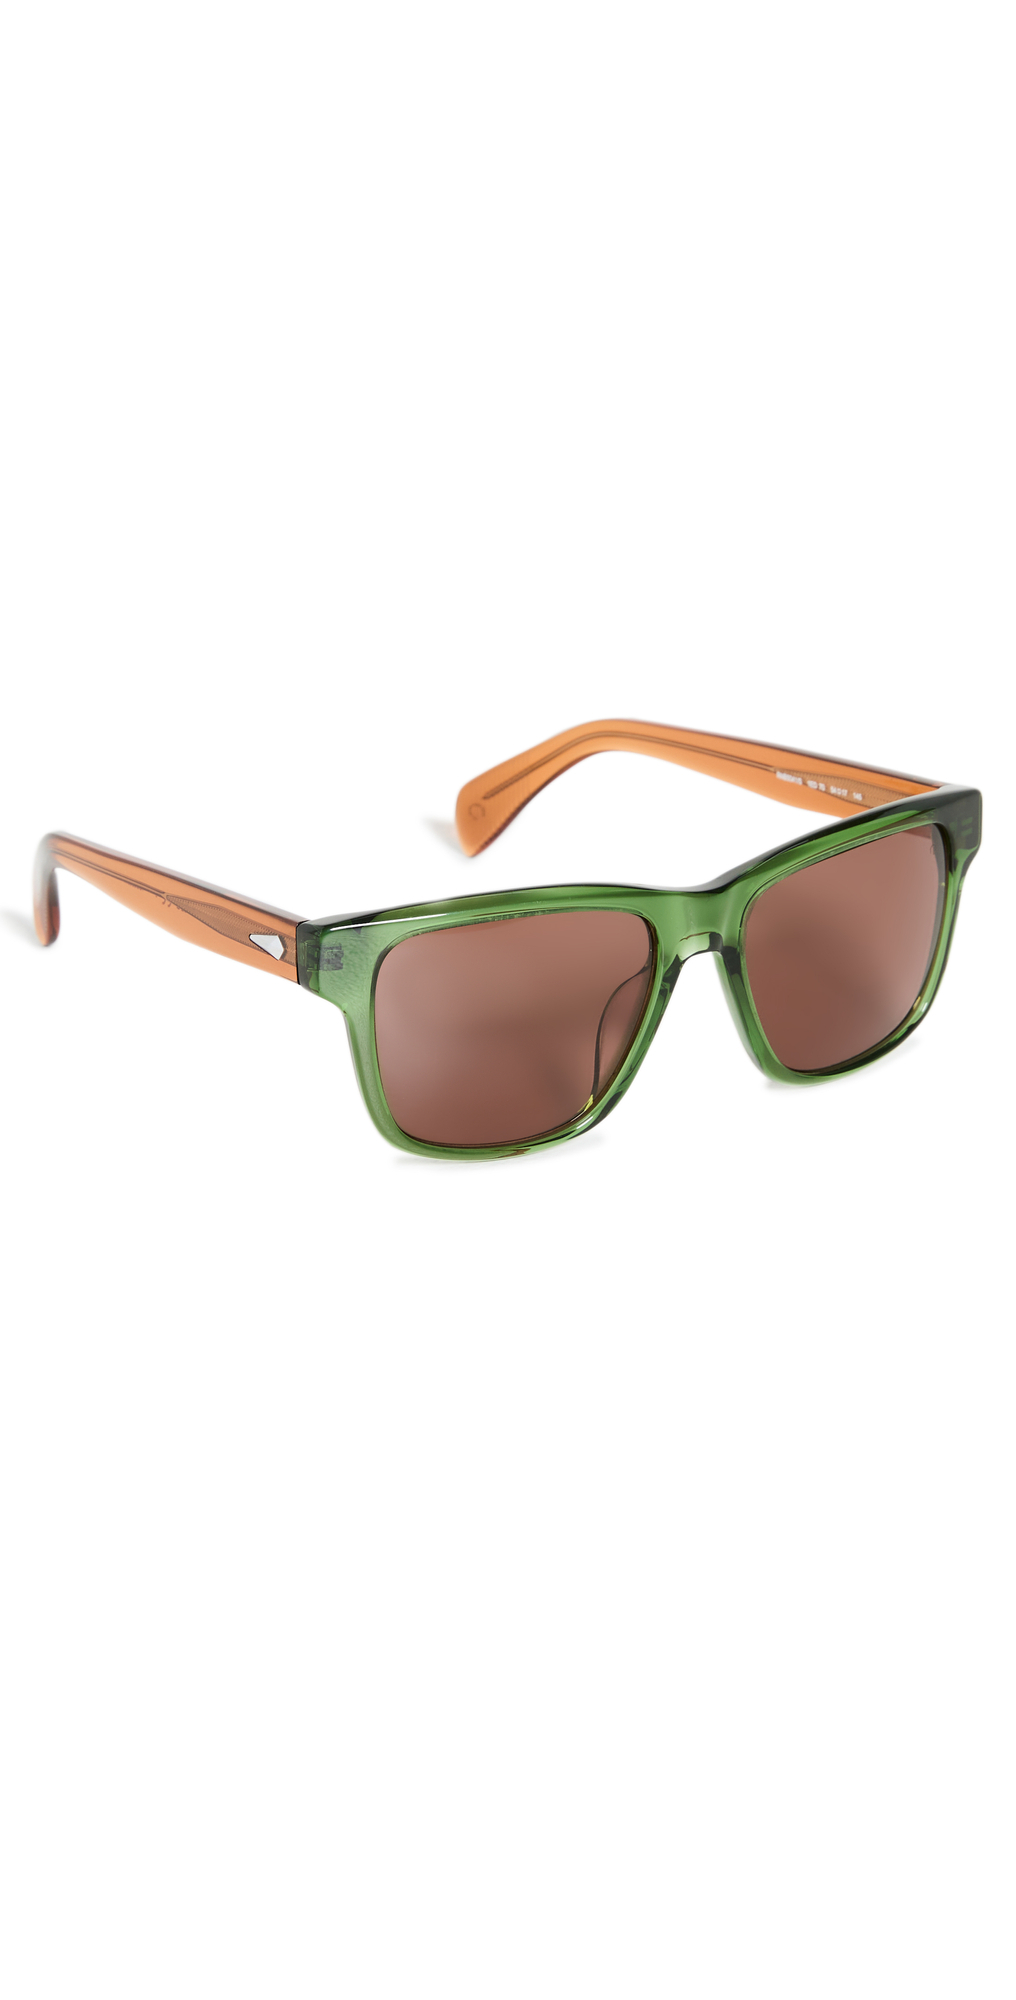 Rag & Bone Square Sunglasses in green